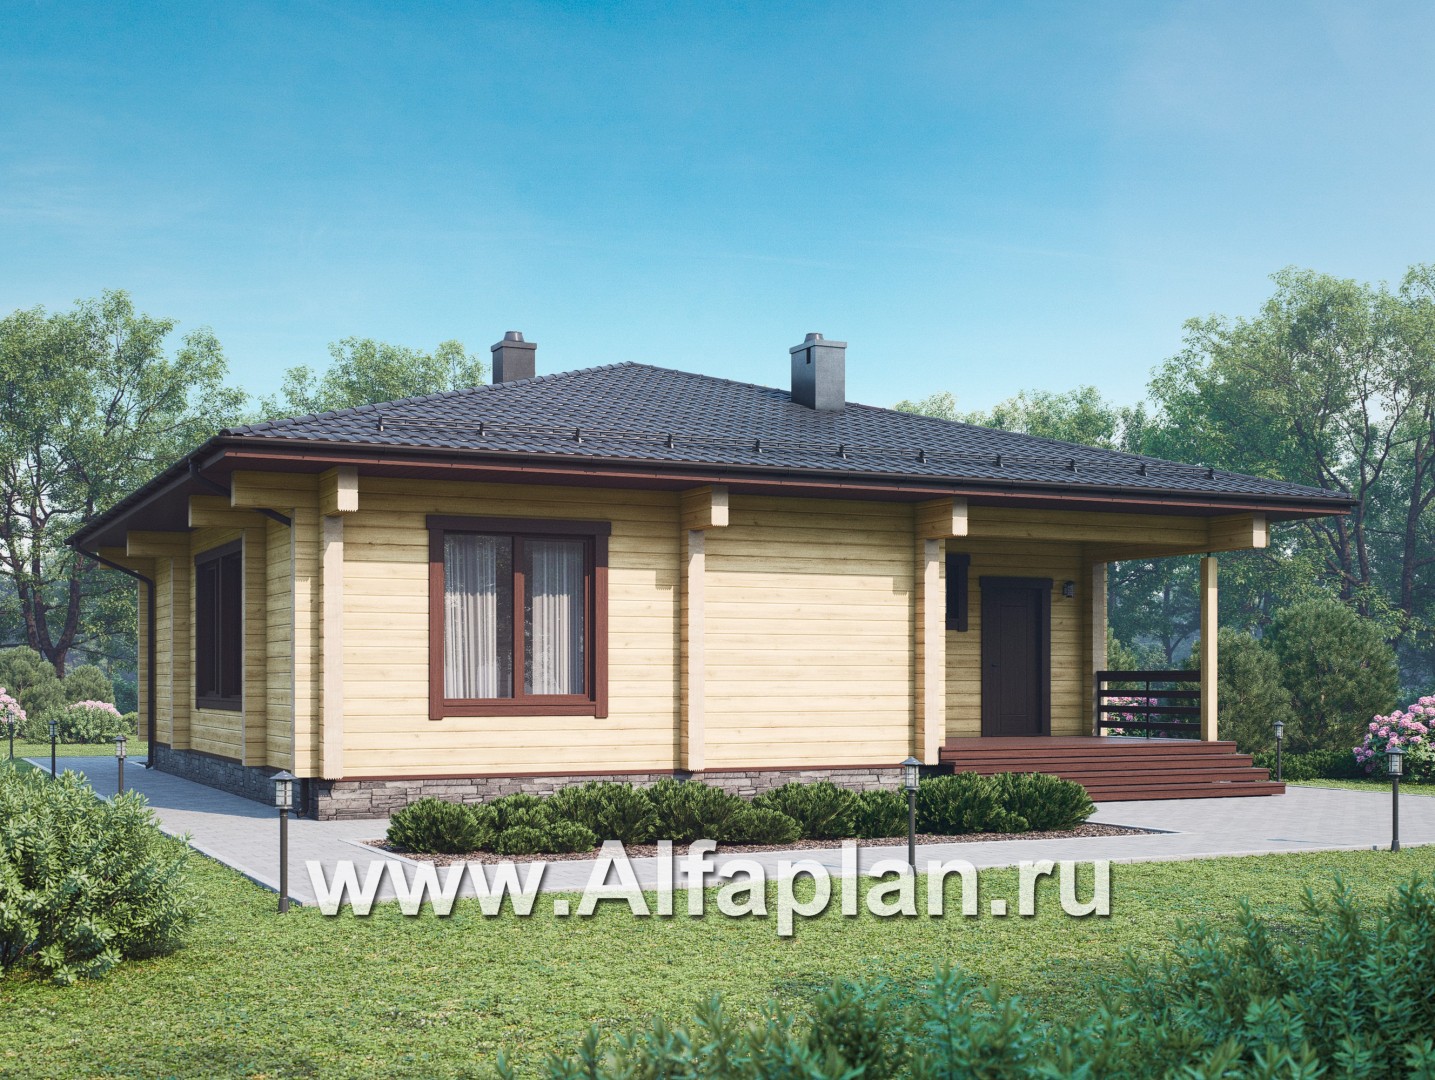 Проект одноэтажного дома из бруса, 3 спальни, дача с террасой, коттедж для отдыха - дизайн дома №1